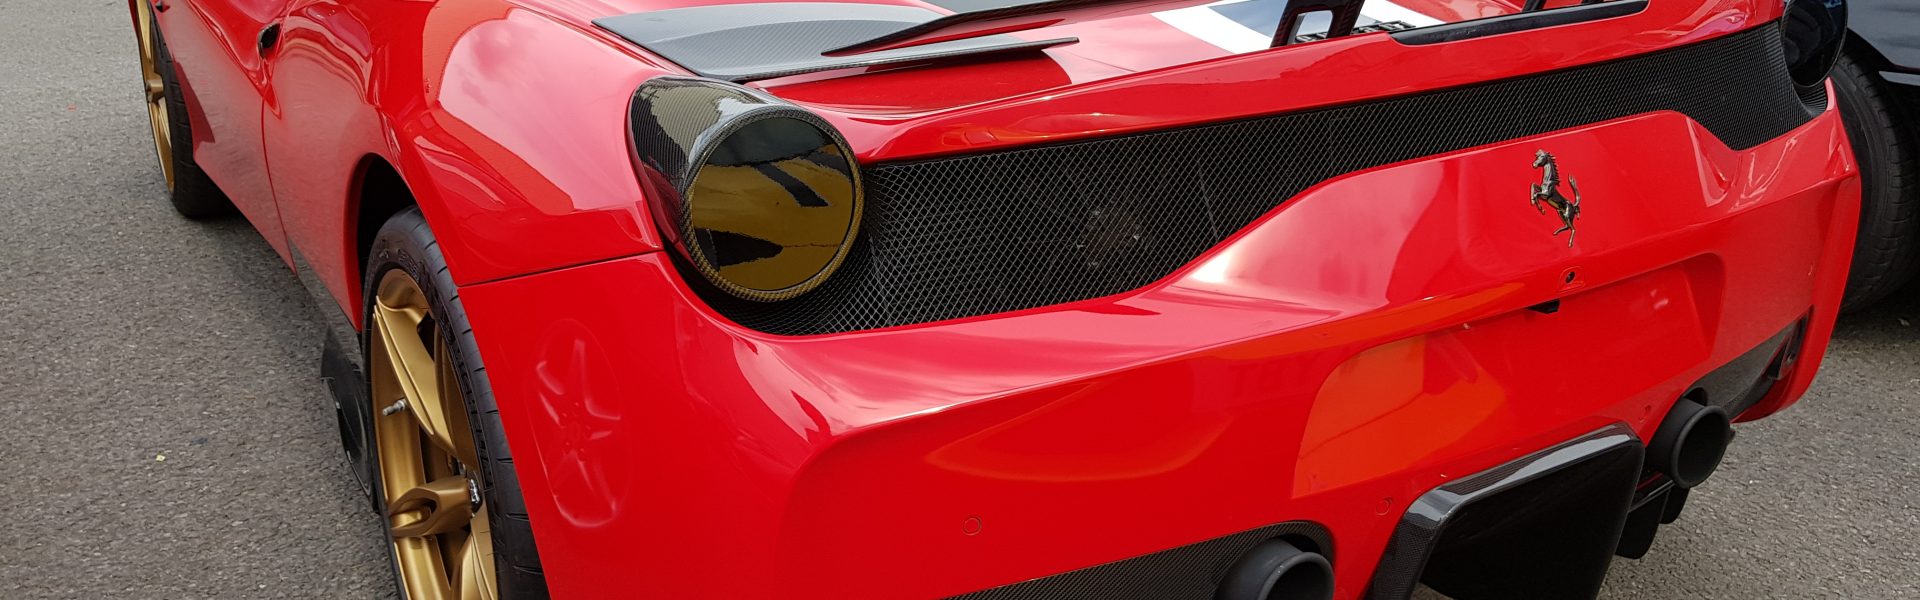 Ferrari 458 Speciale – Full Inconel exhaust, ECU tune and carbon fibre accessories